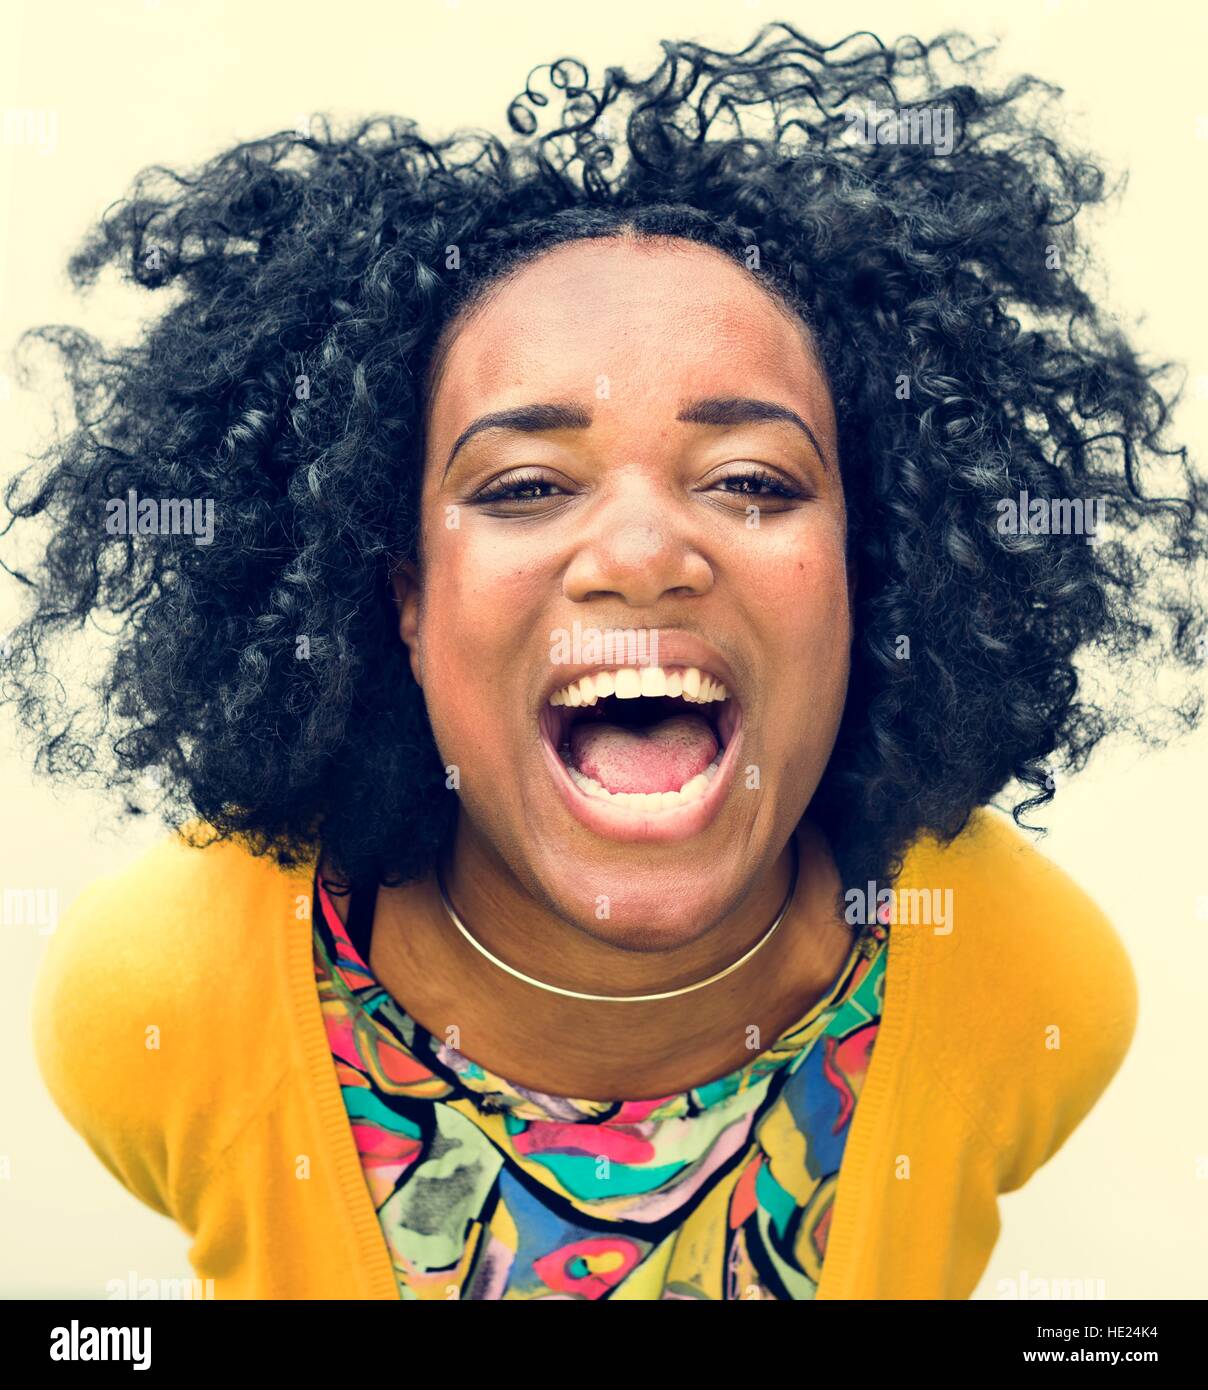 Afrikanischer Herkunft Teen Mädchen lächelnd Porträt Konzept Stockfoto